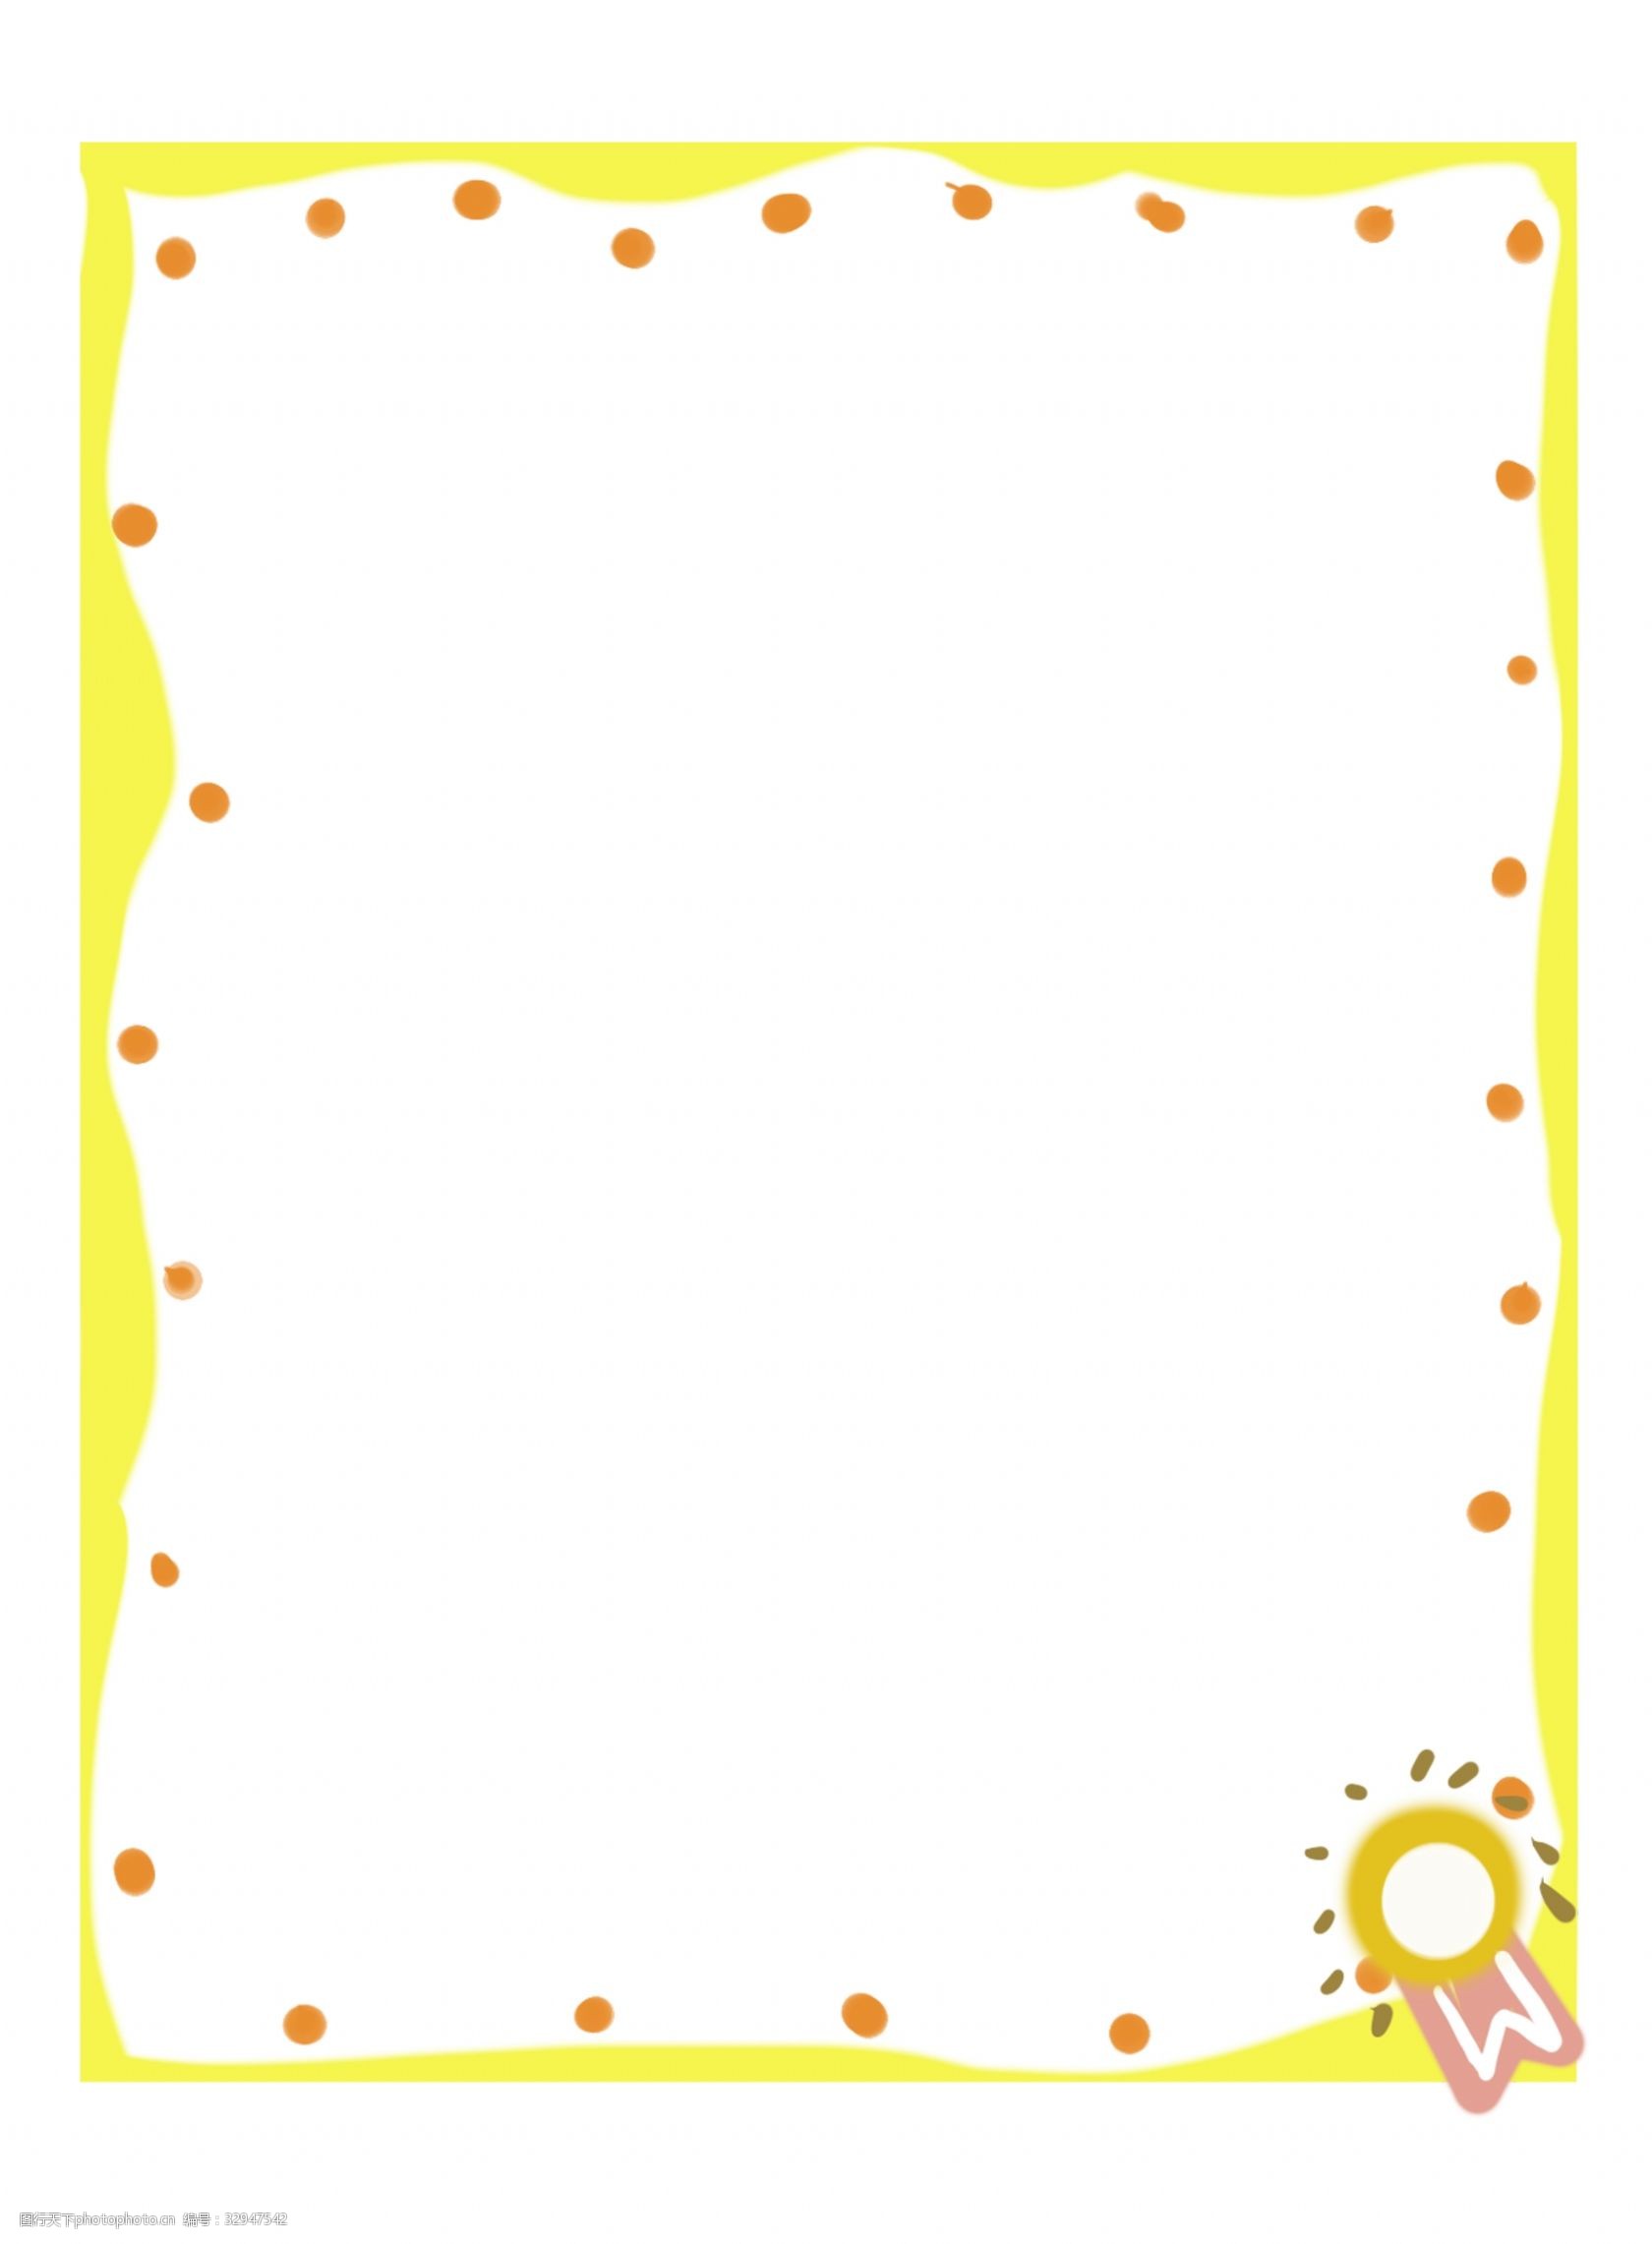 黄色立体边框插图 橙色圆点 黄色边框 立体边框 图案装饰 卡通边框